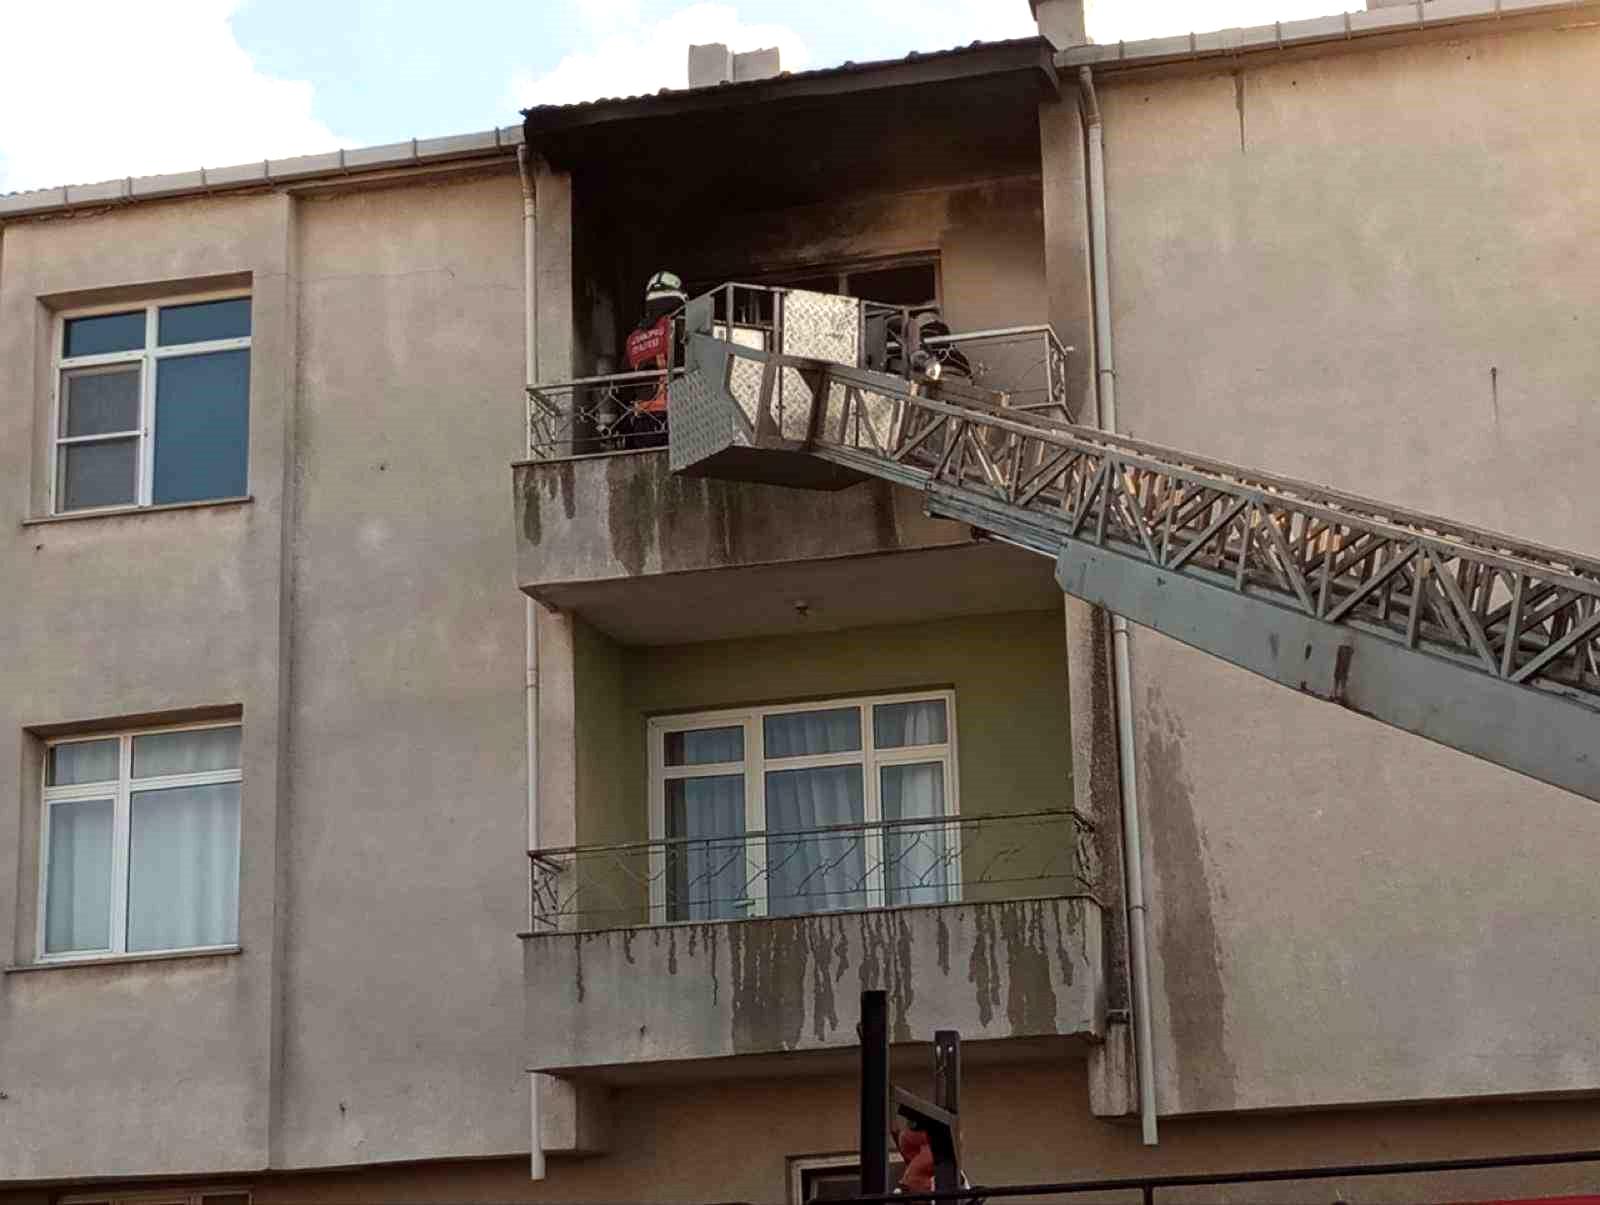 İki katlı evde çıkan yangın uzun uğraşlar sonucu kontrol altına alındı